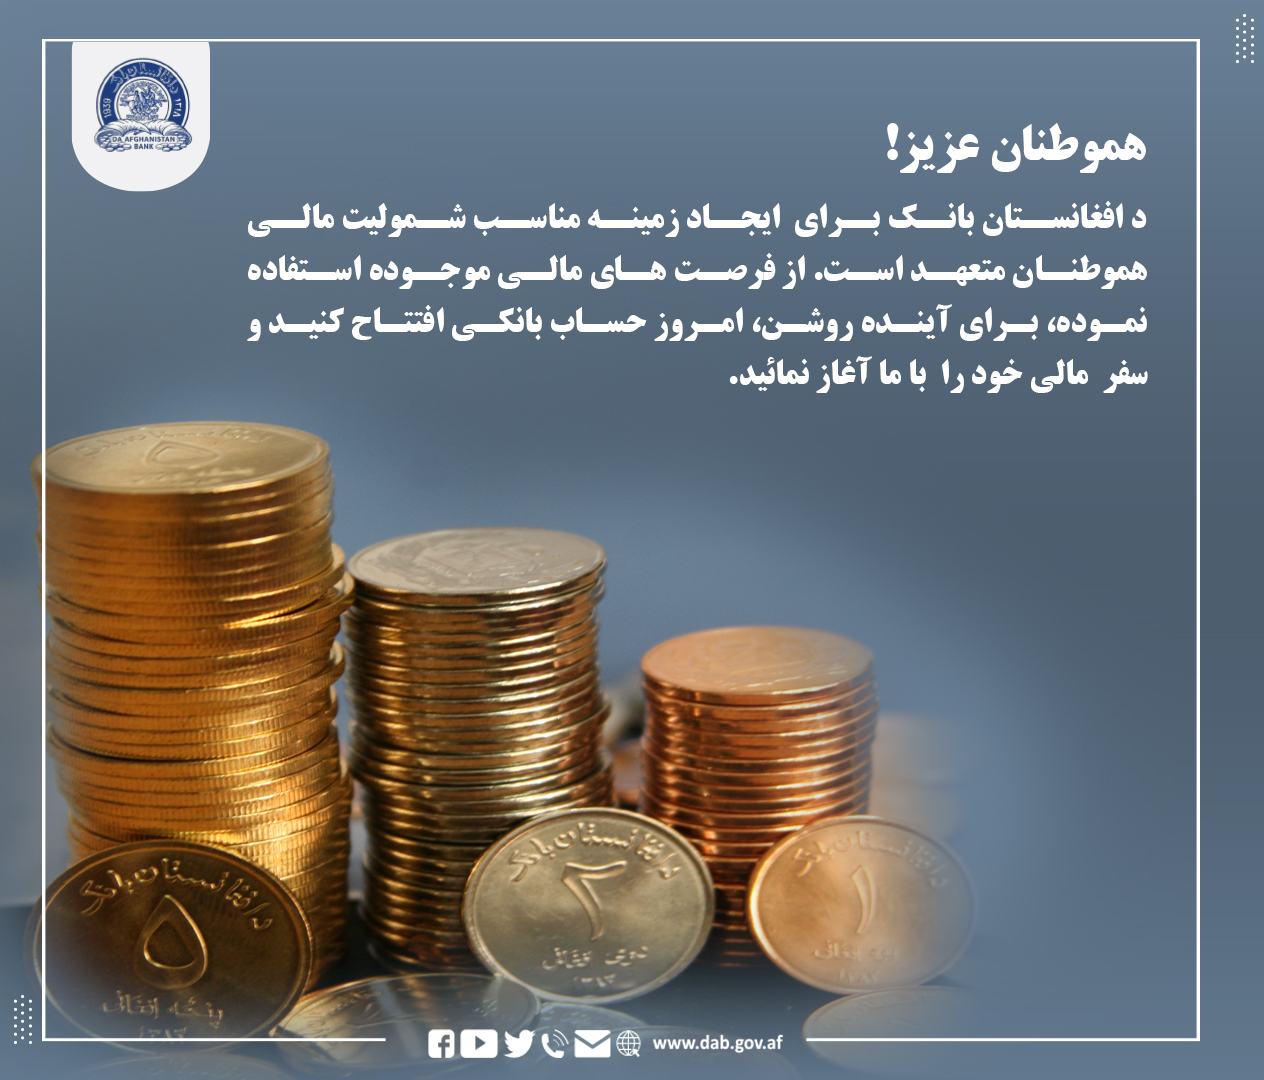 د افغانستان بانک برای ایجاد زمینه مناسب شمولیت مالی هموطنان متعهد است